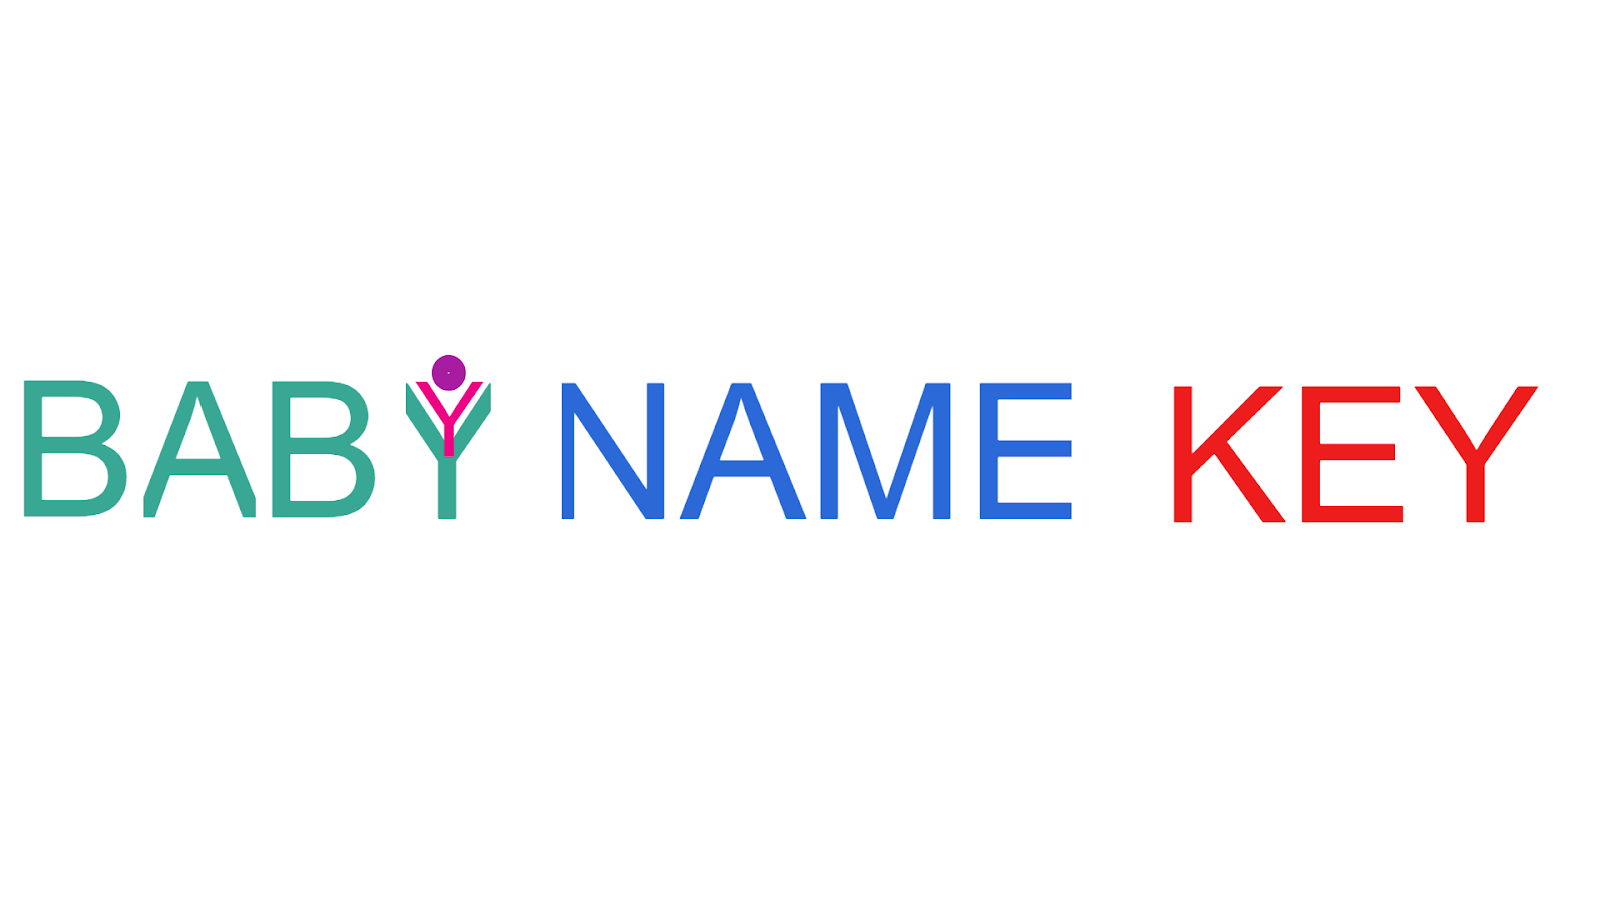 BABY NAME KEY